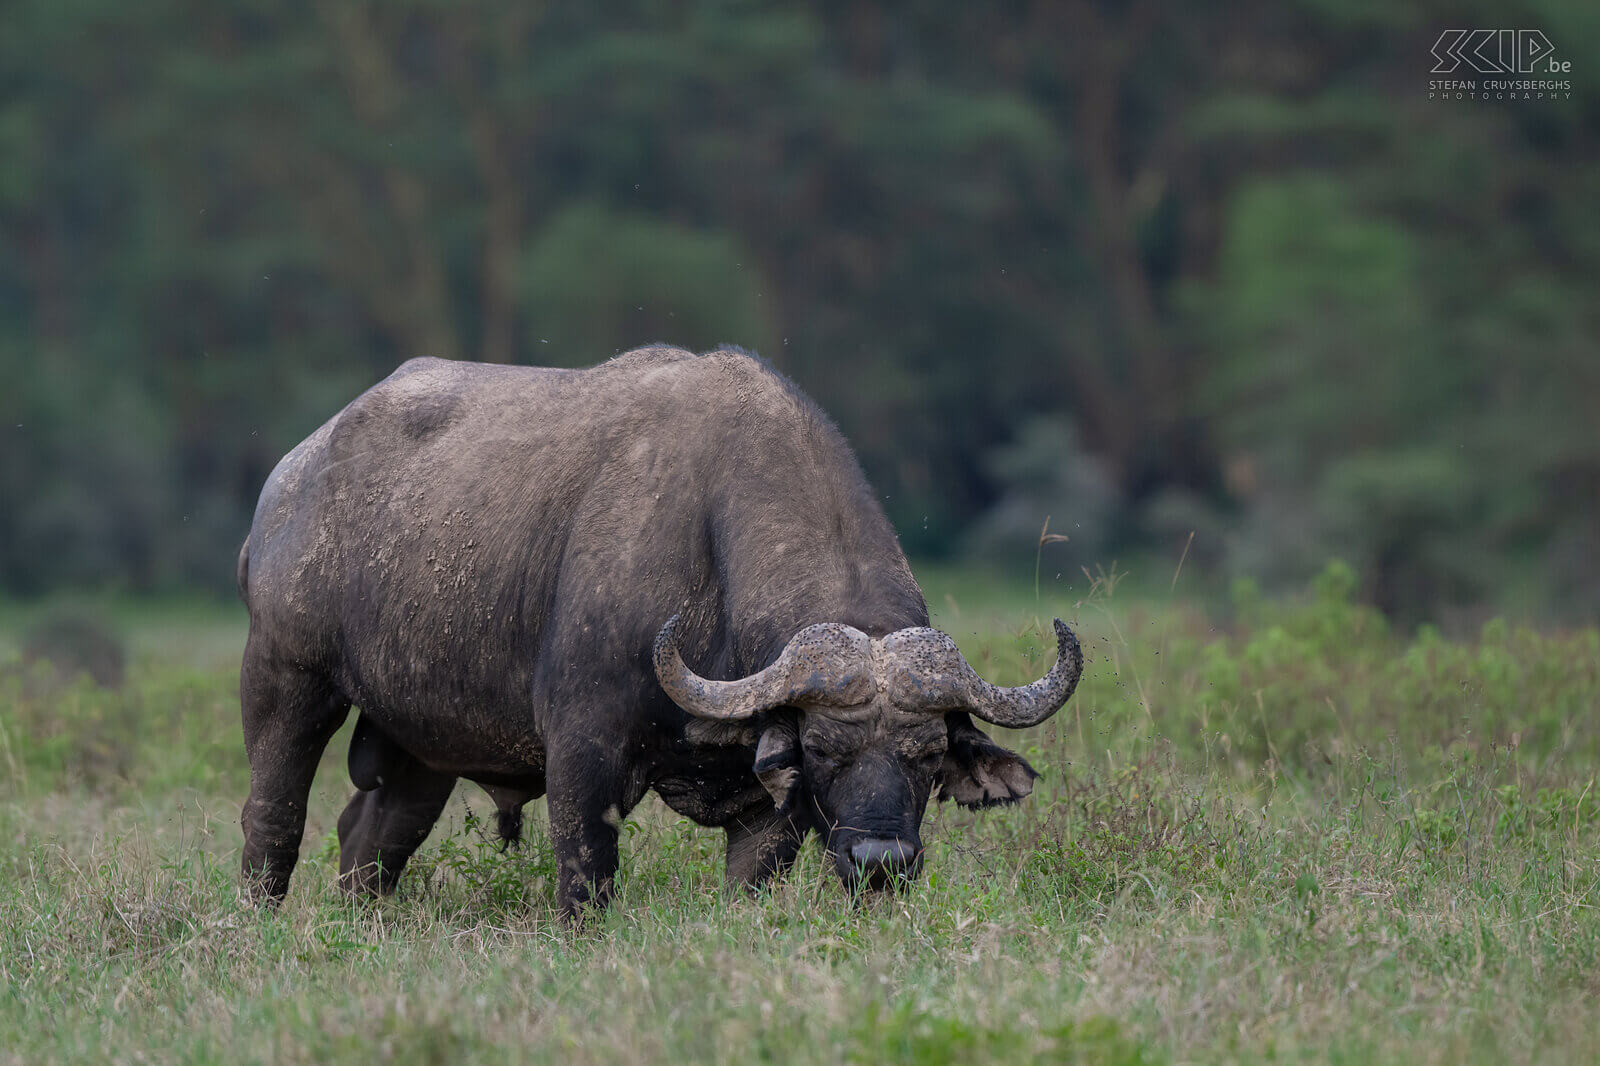 Nakuru NP - Afrikaanse buffel Afrikaanse buffel is het grootste holhoornige hoefdier in Afrika. Ze kunnen tot 850 kg weg en ze leven in grote kuddes zowel op de savanne als in bossen. Het is bovendien ook één van de big-five-soorten. De buffel is een geliefkoosde prooi voor leeuwen. Stefan Cruysberghs